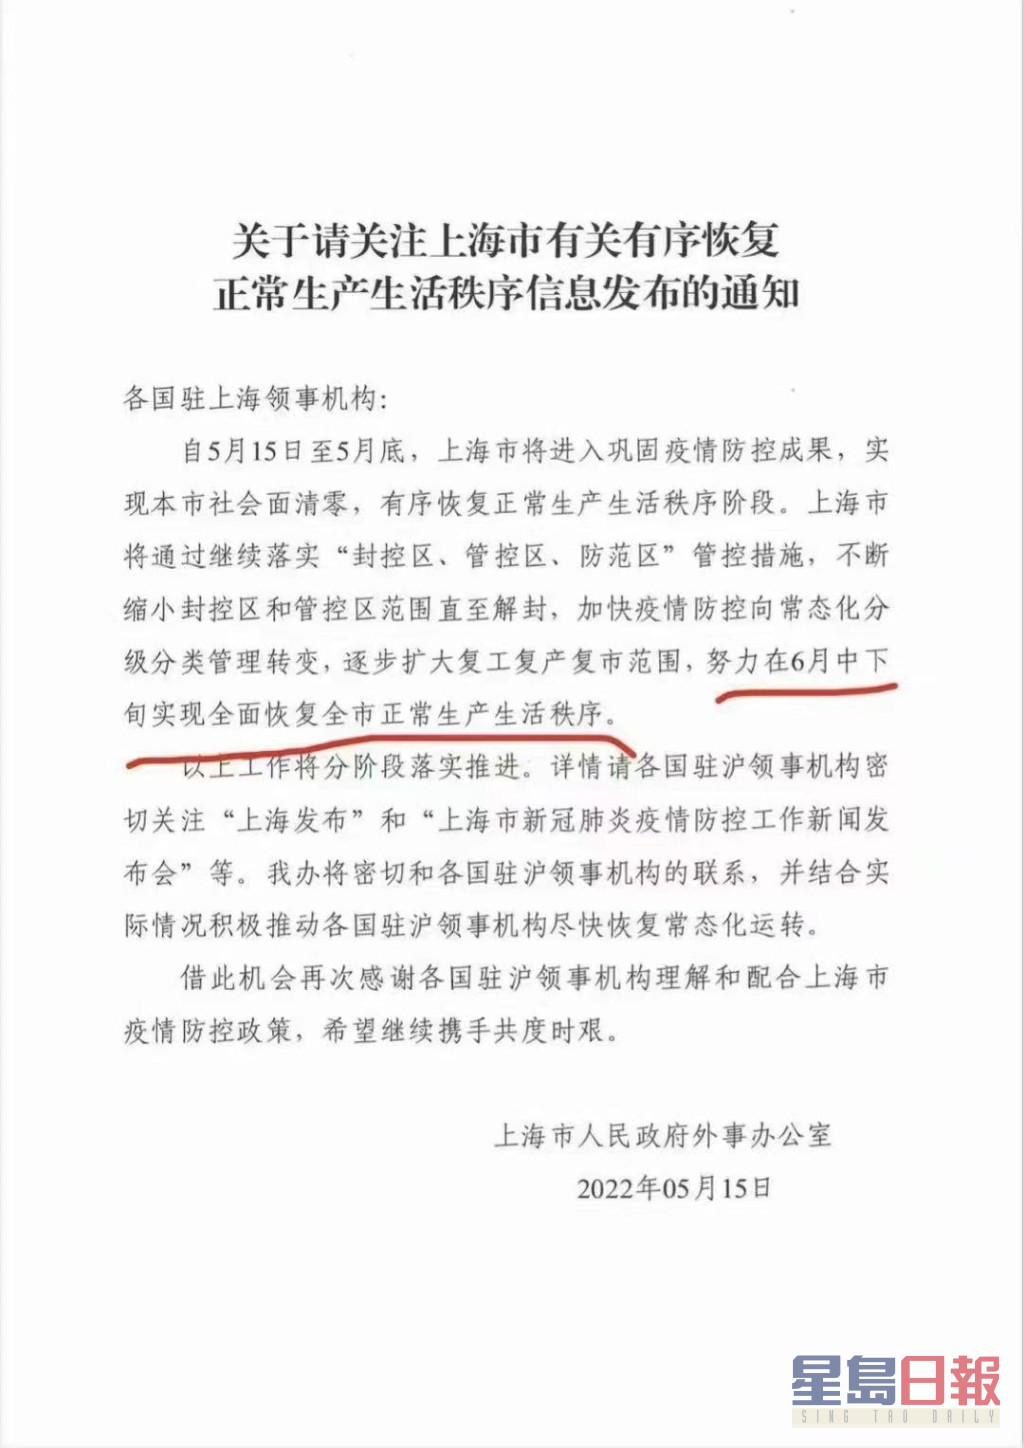 网上流传的一份上海外事办致各国领事馆信函，称努力在六月中下旬实现全面恢复正常生产生活秩序。